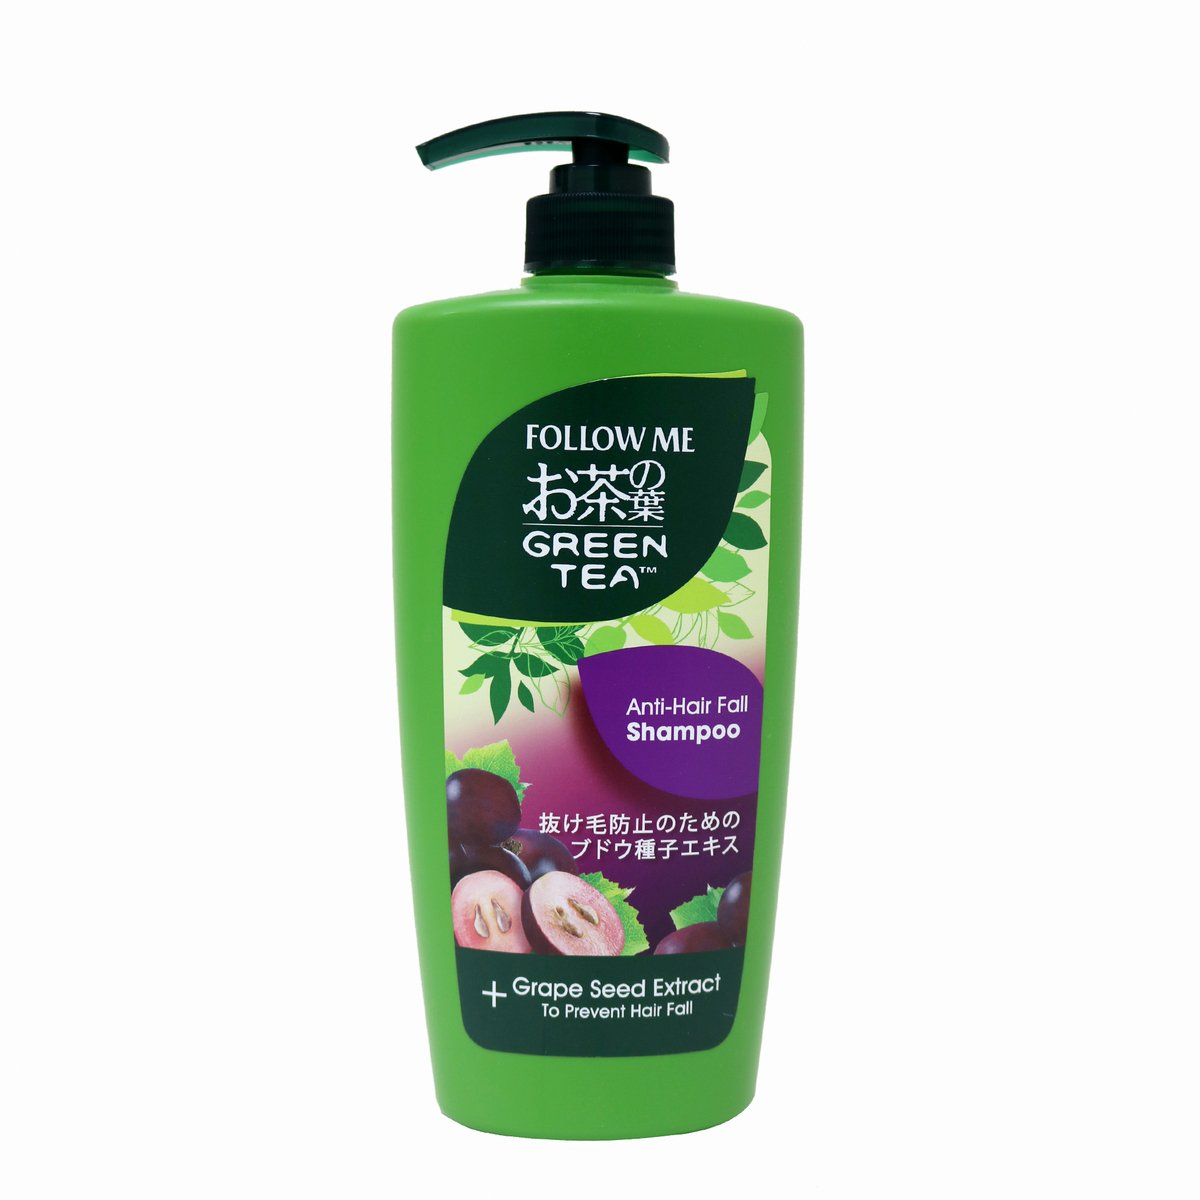 Follow Me Green Tea Shampoo Anti Hair Fall 650ml